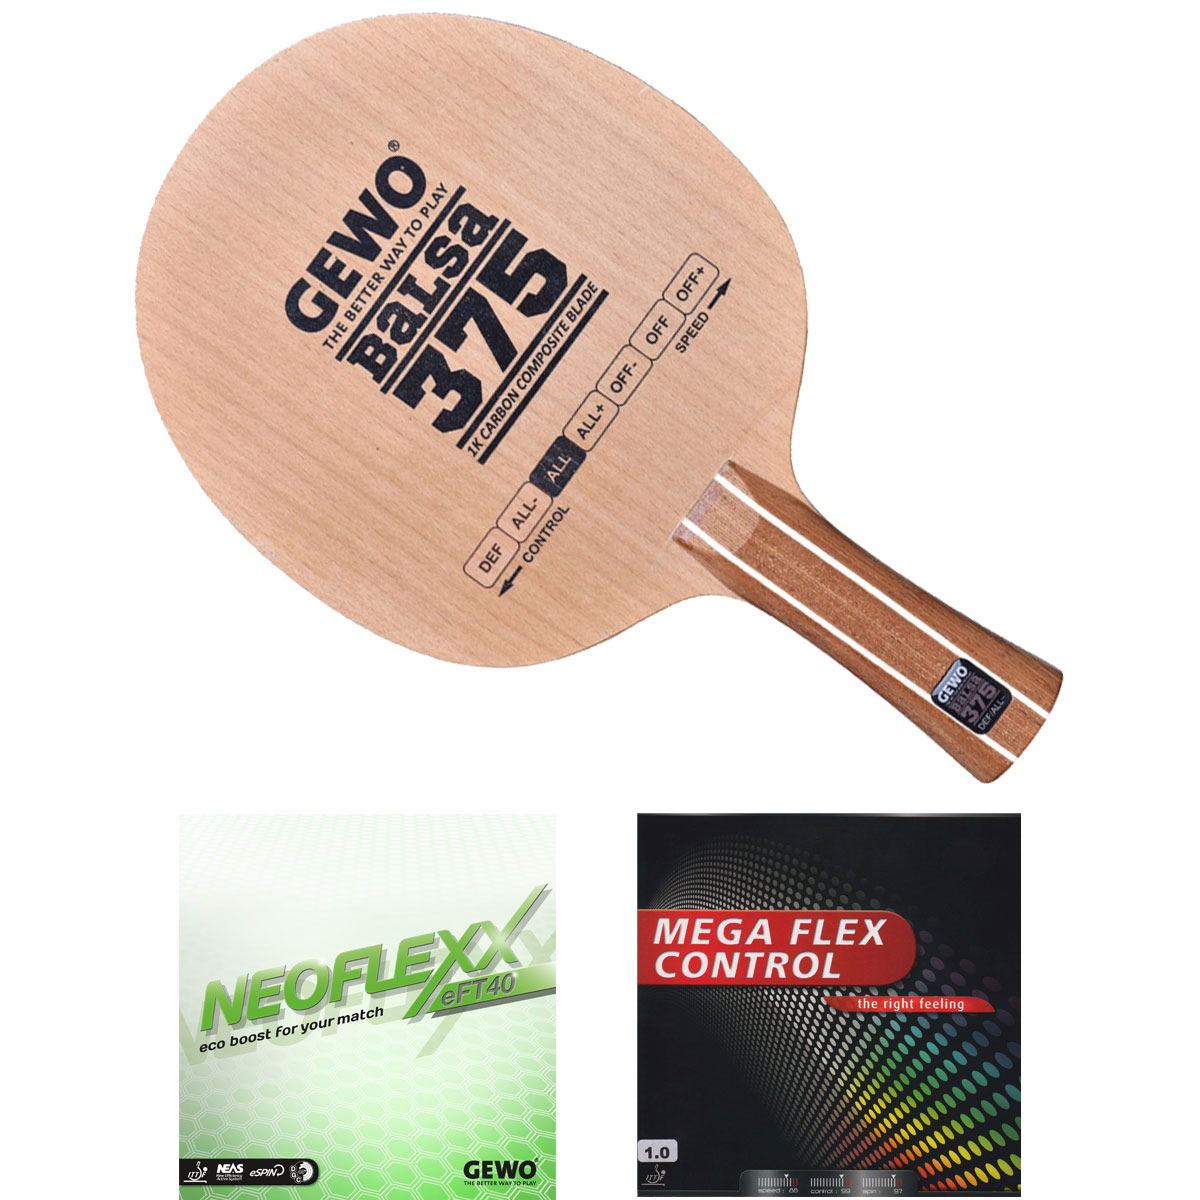 GEWO Schläger: Holz Balsa Carbon 375 mit Neoflexx eFT40 + Mega Flex Control  konkav